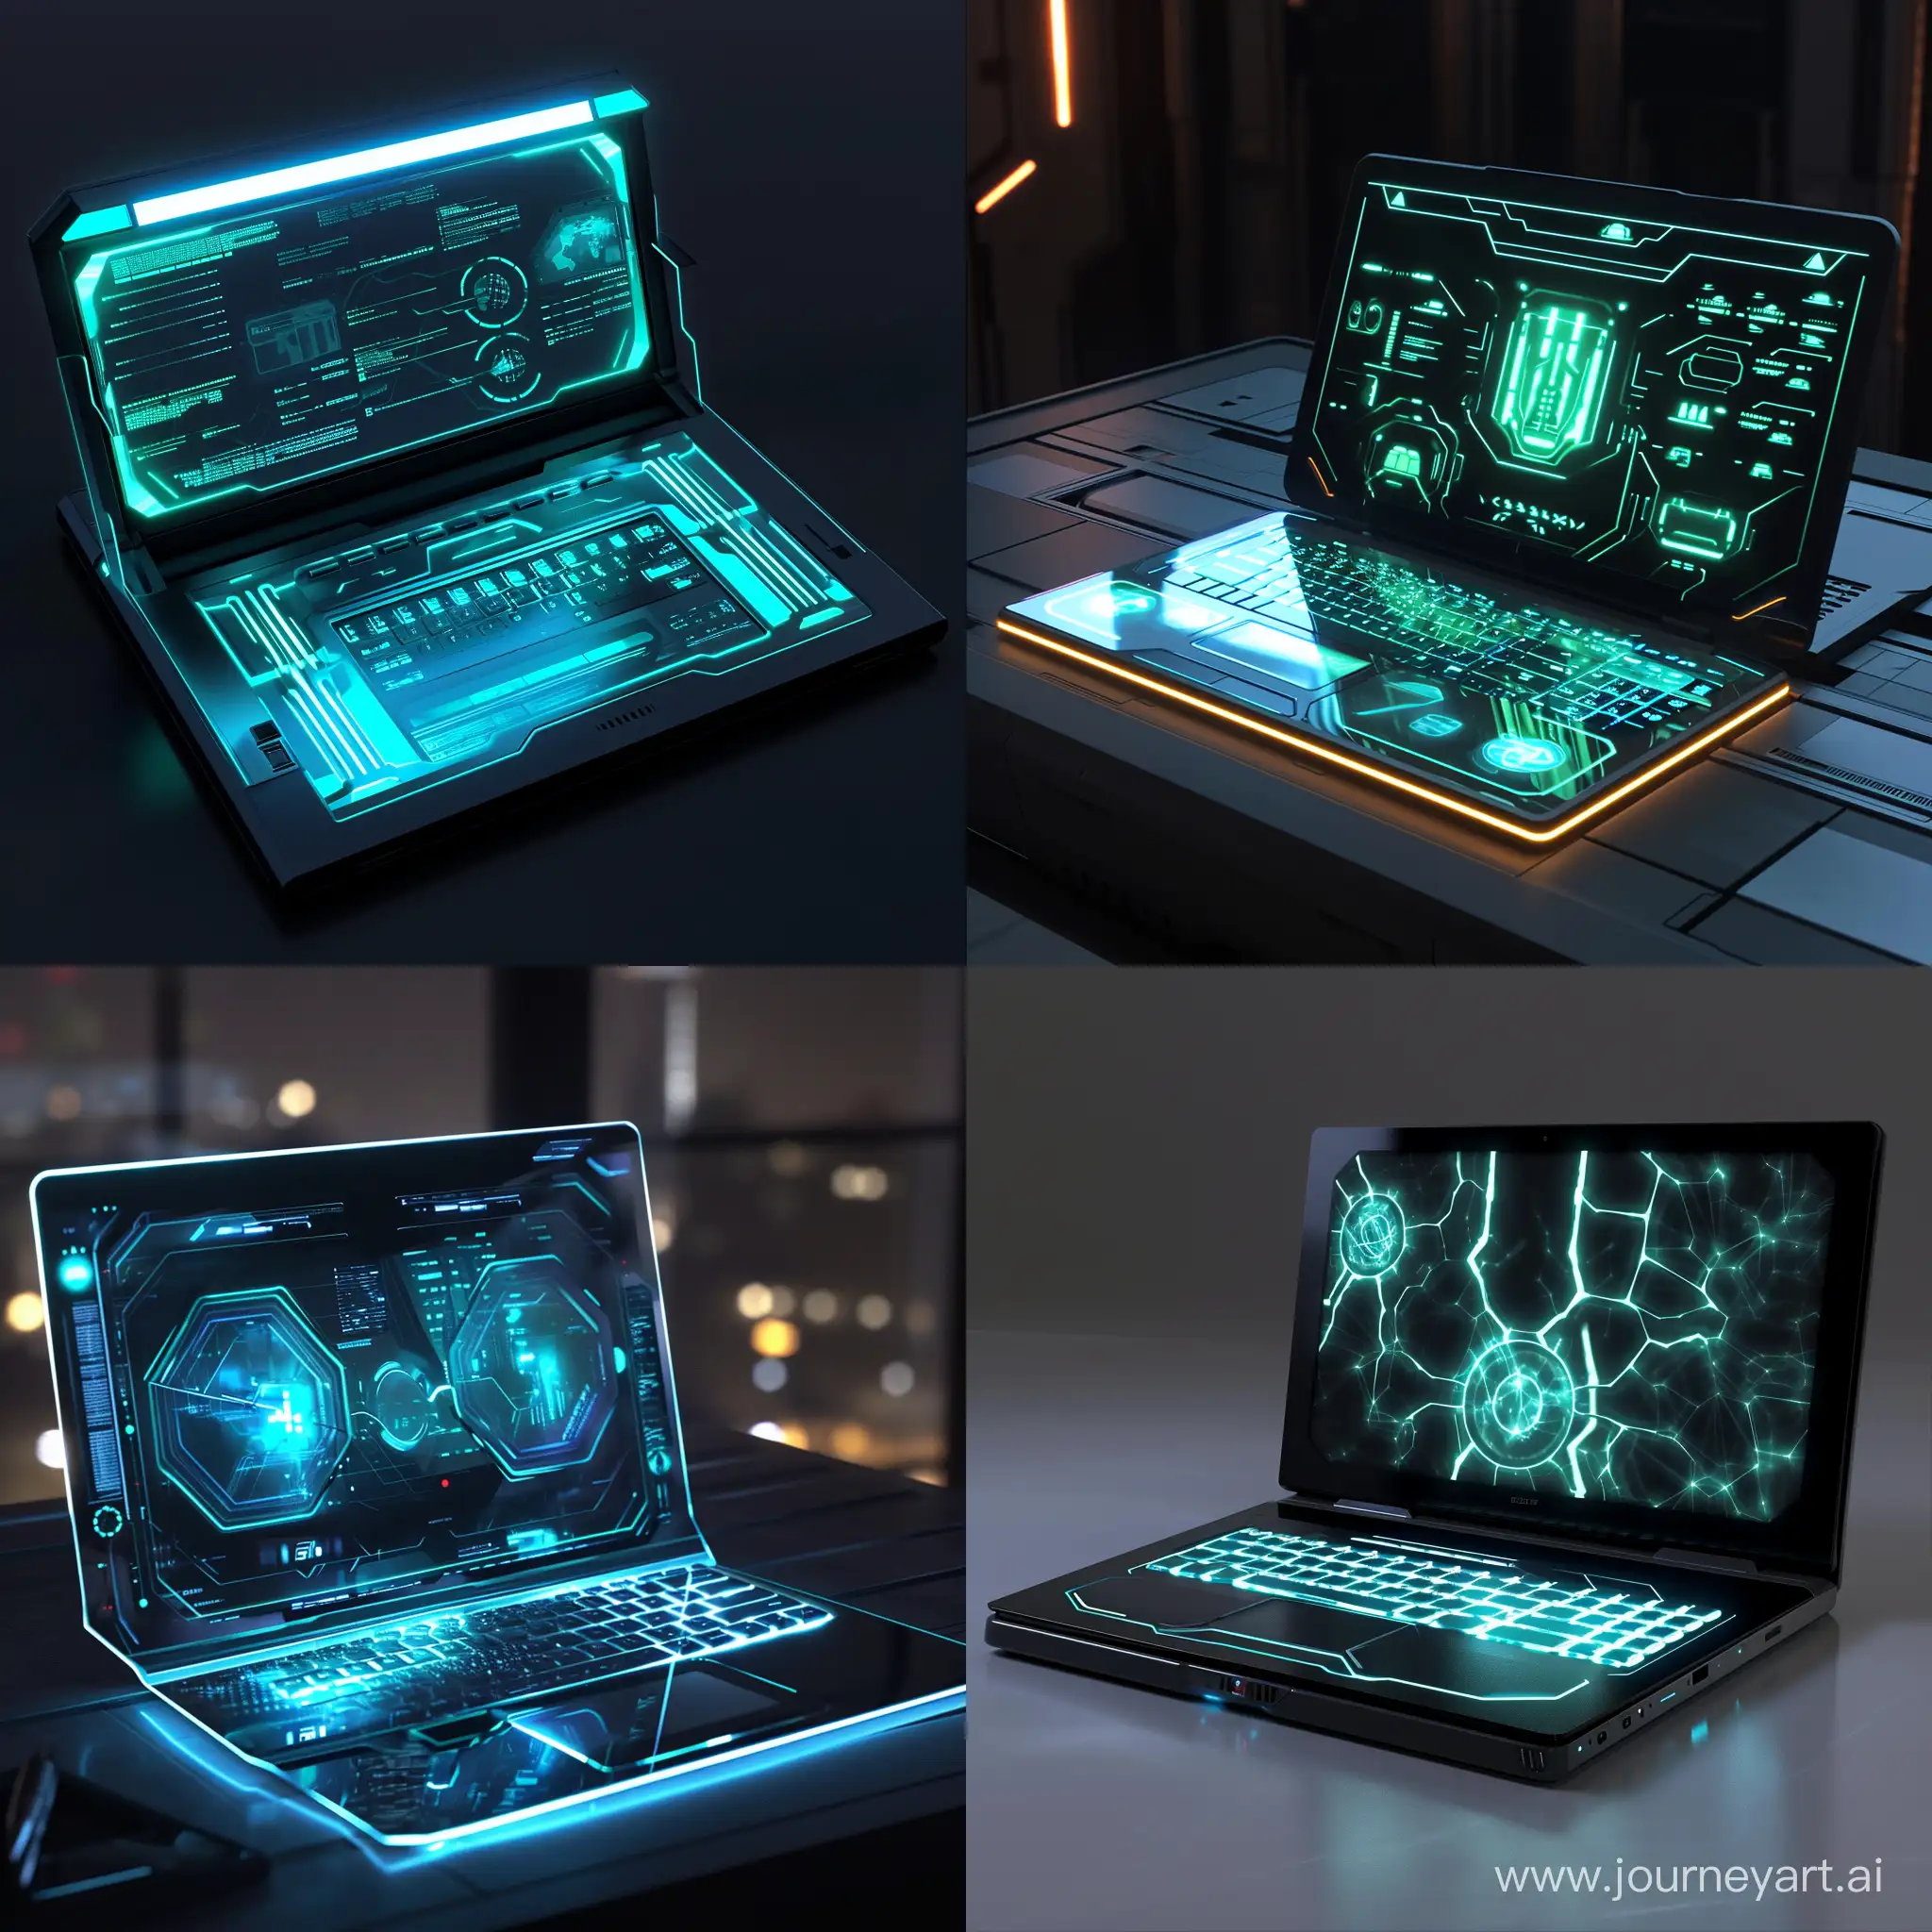 Futuristic laptop, bioluminescent displays, artstation, DeviantArt, science fiction --v 6 